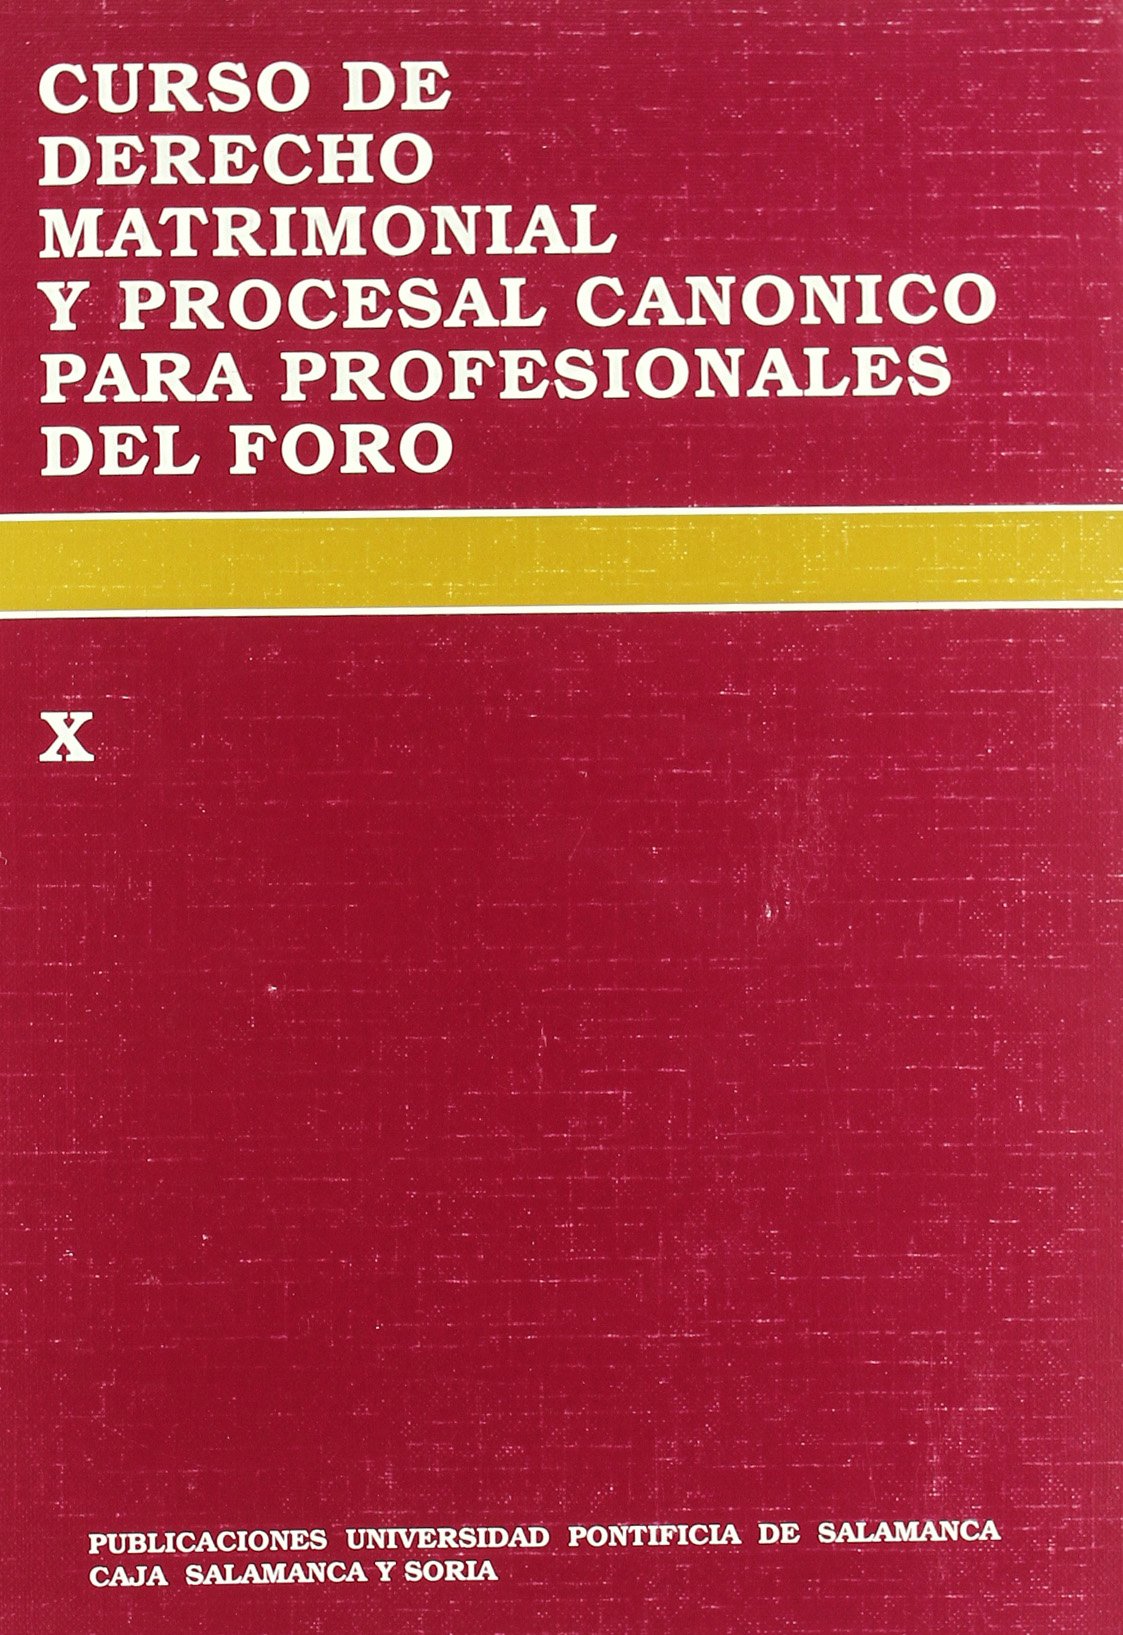 Imagen de portada del libro Curso de derecho matrimonial y procesal canónico para profesionales del foro (X)